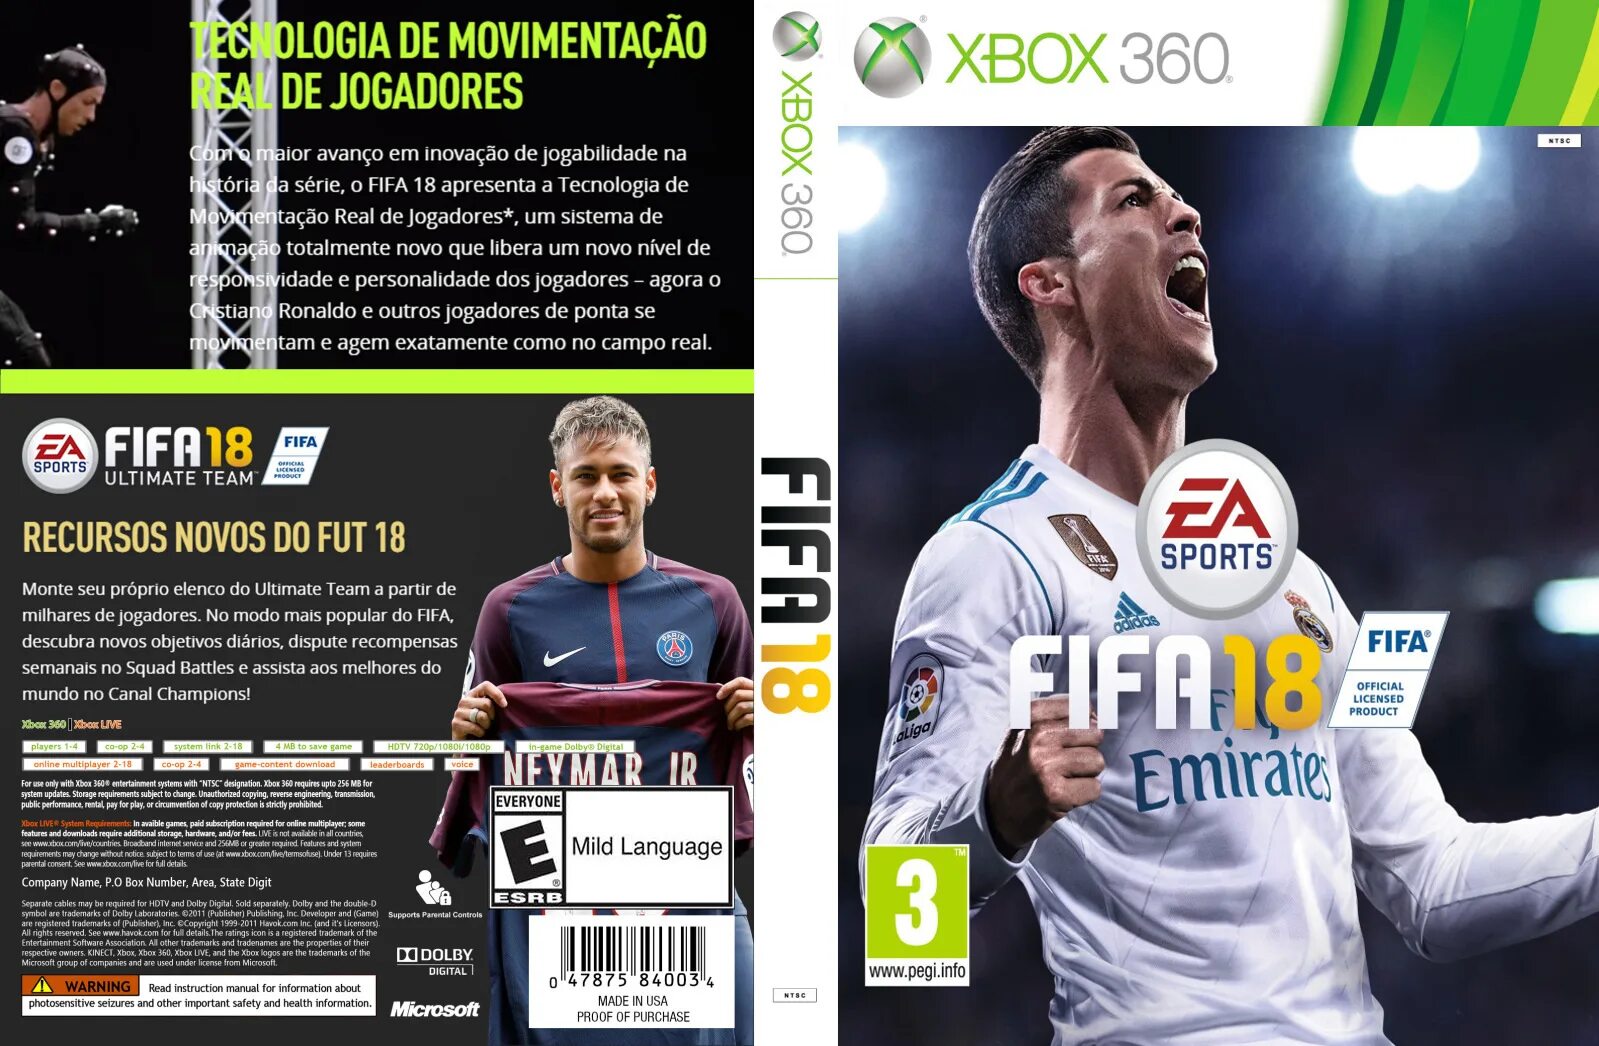 Обложка ФИФА 19 Xbox 360. FIFA 18 Xbox 360 обложка. ФИФА 2018 хбокс 360. Обложка фифы 18 иксбокс 360.